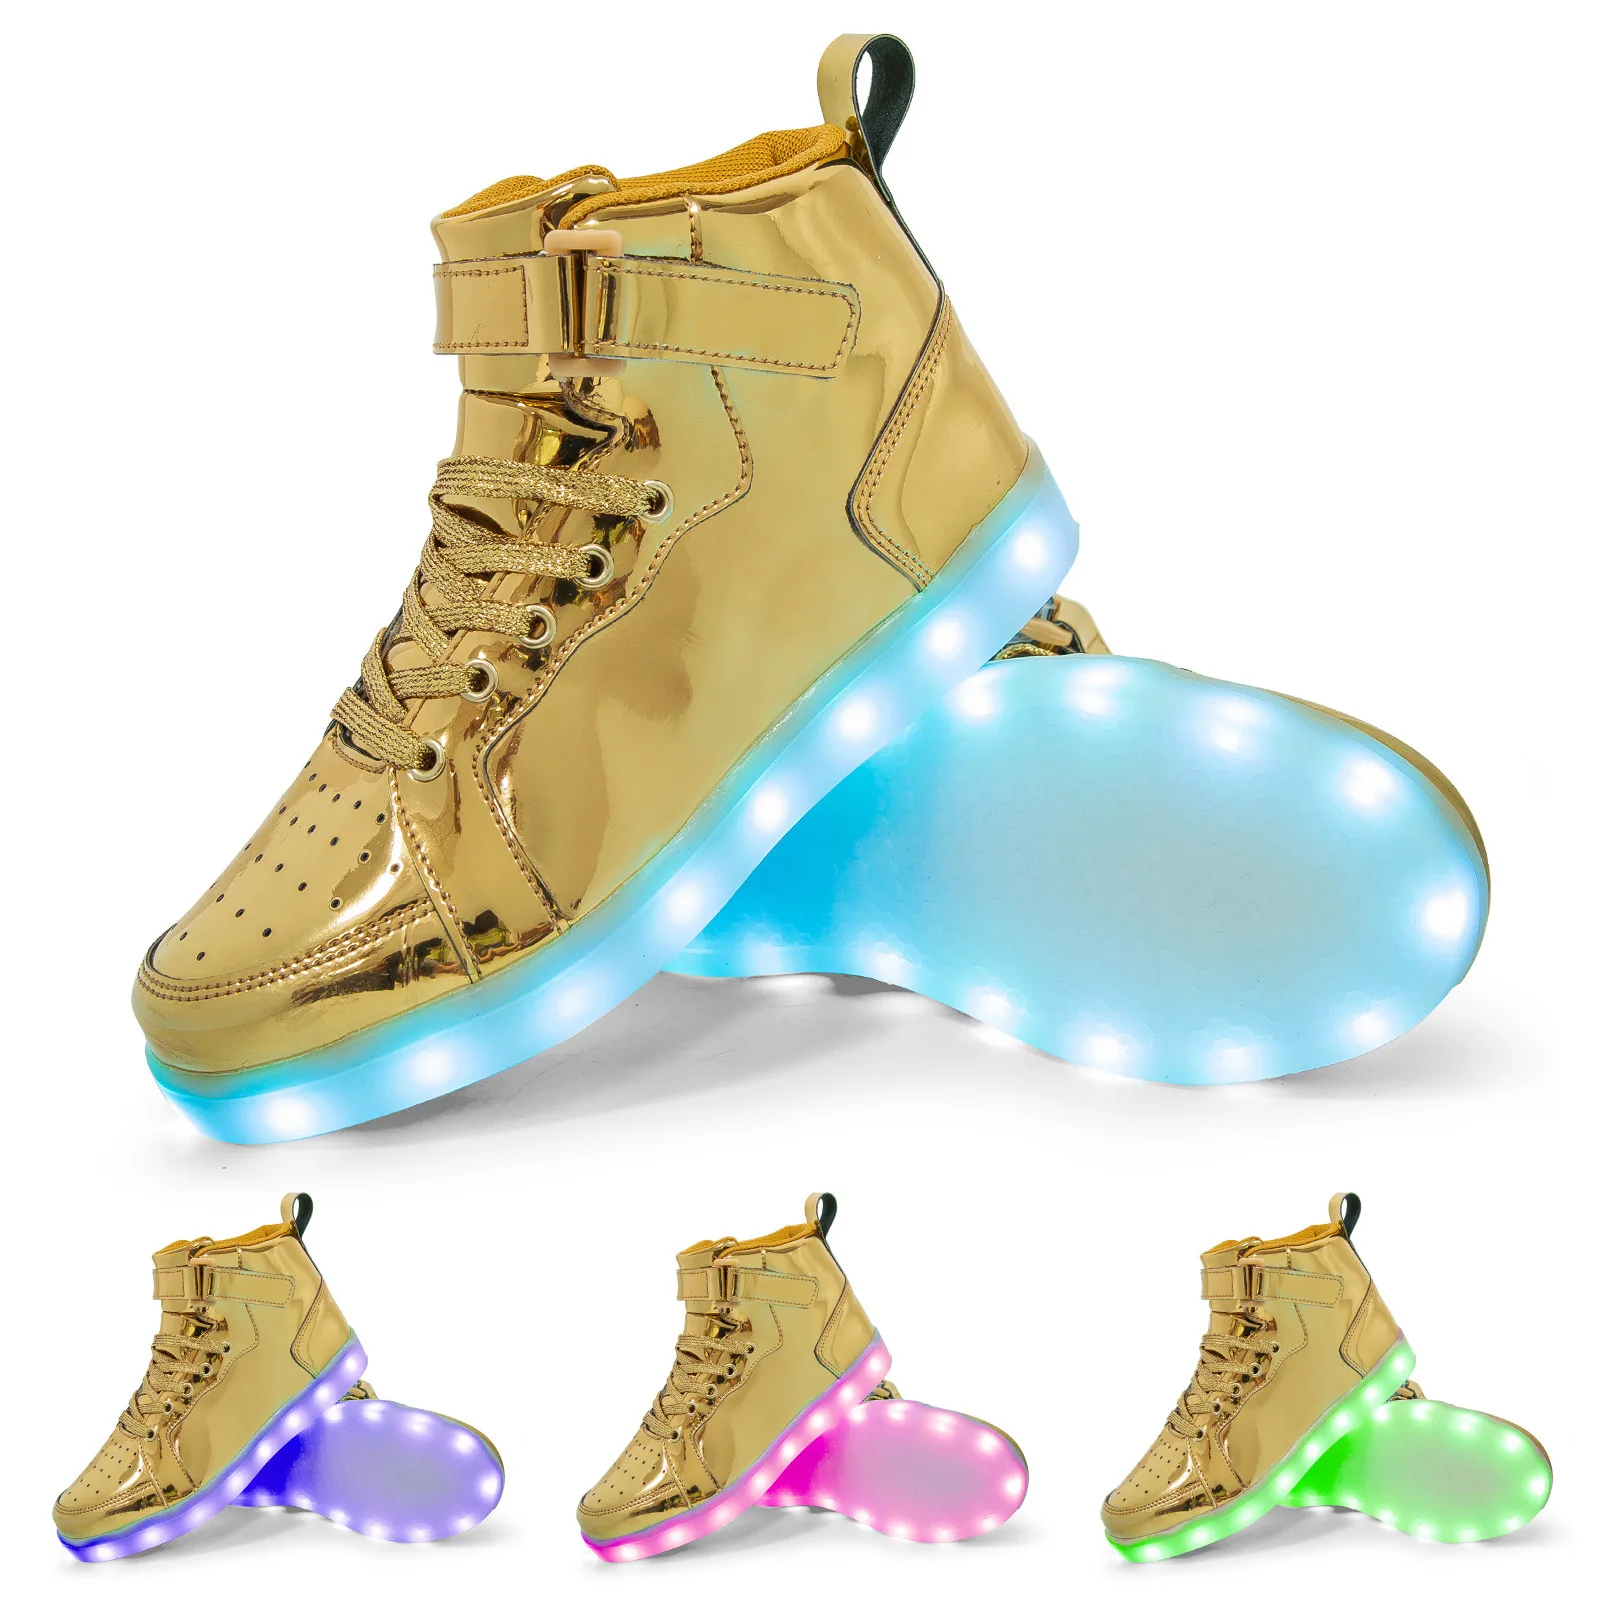 women's vulcanize shoes discontinued Men Led Luminous Shoes Women High-Top Charging Glowing Sneakers Children USB Rechargeable Shuffle Dance Shoes Size 25-47 women's vulcanize shoes expensive